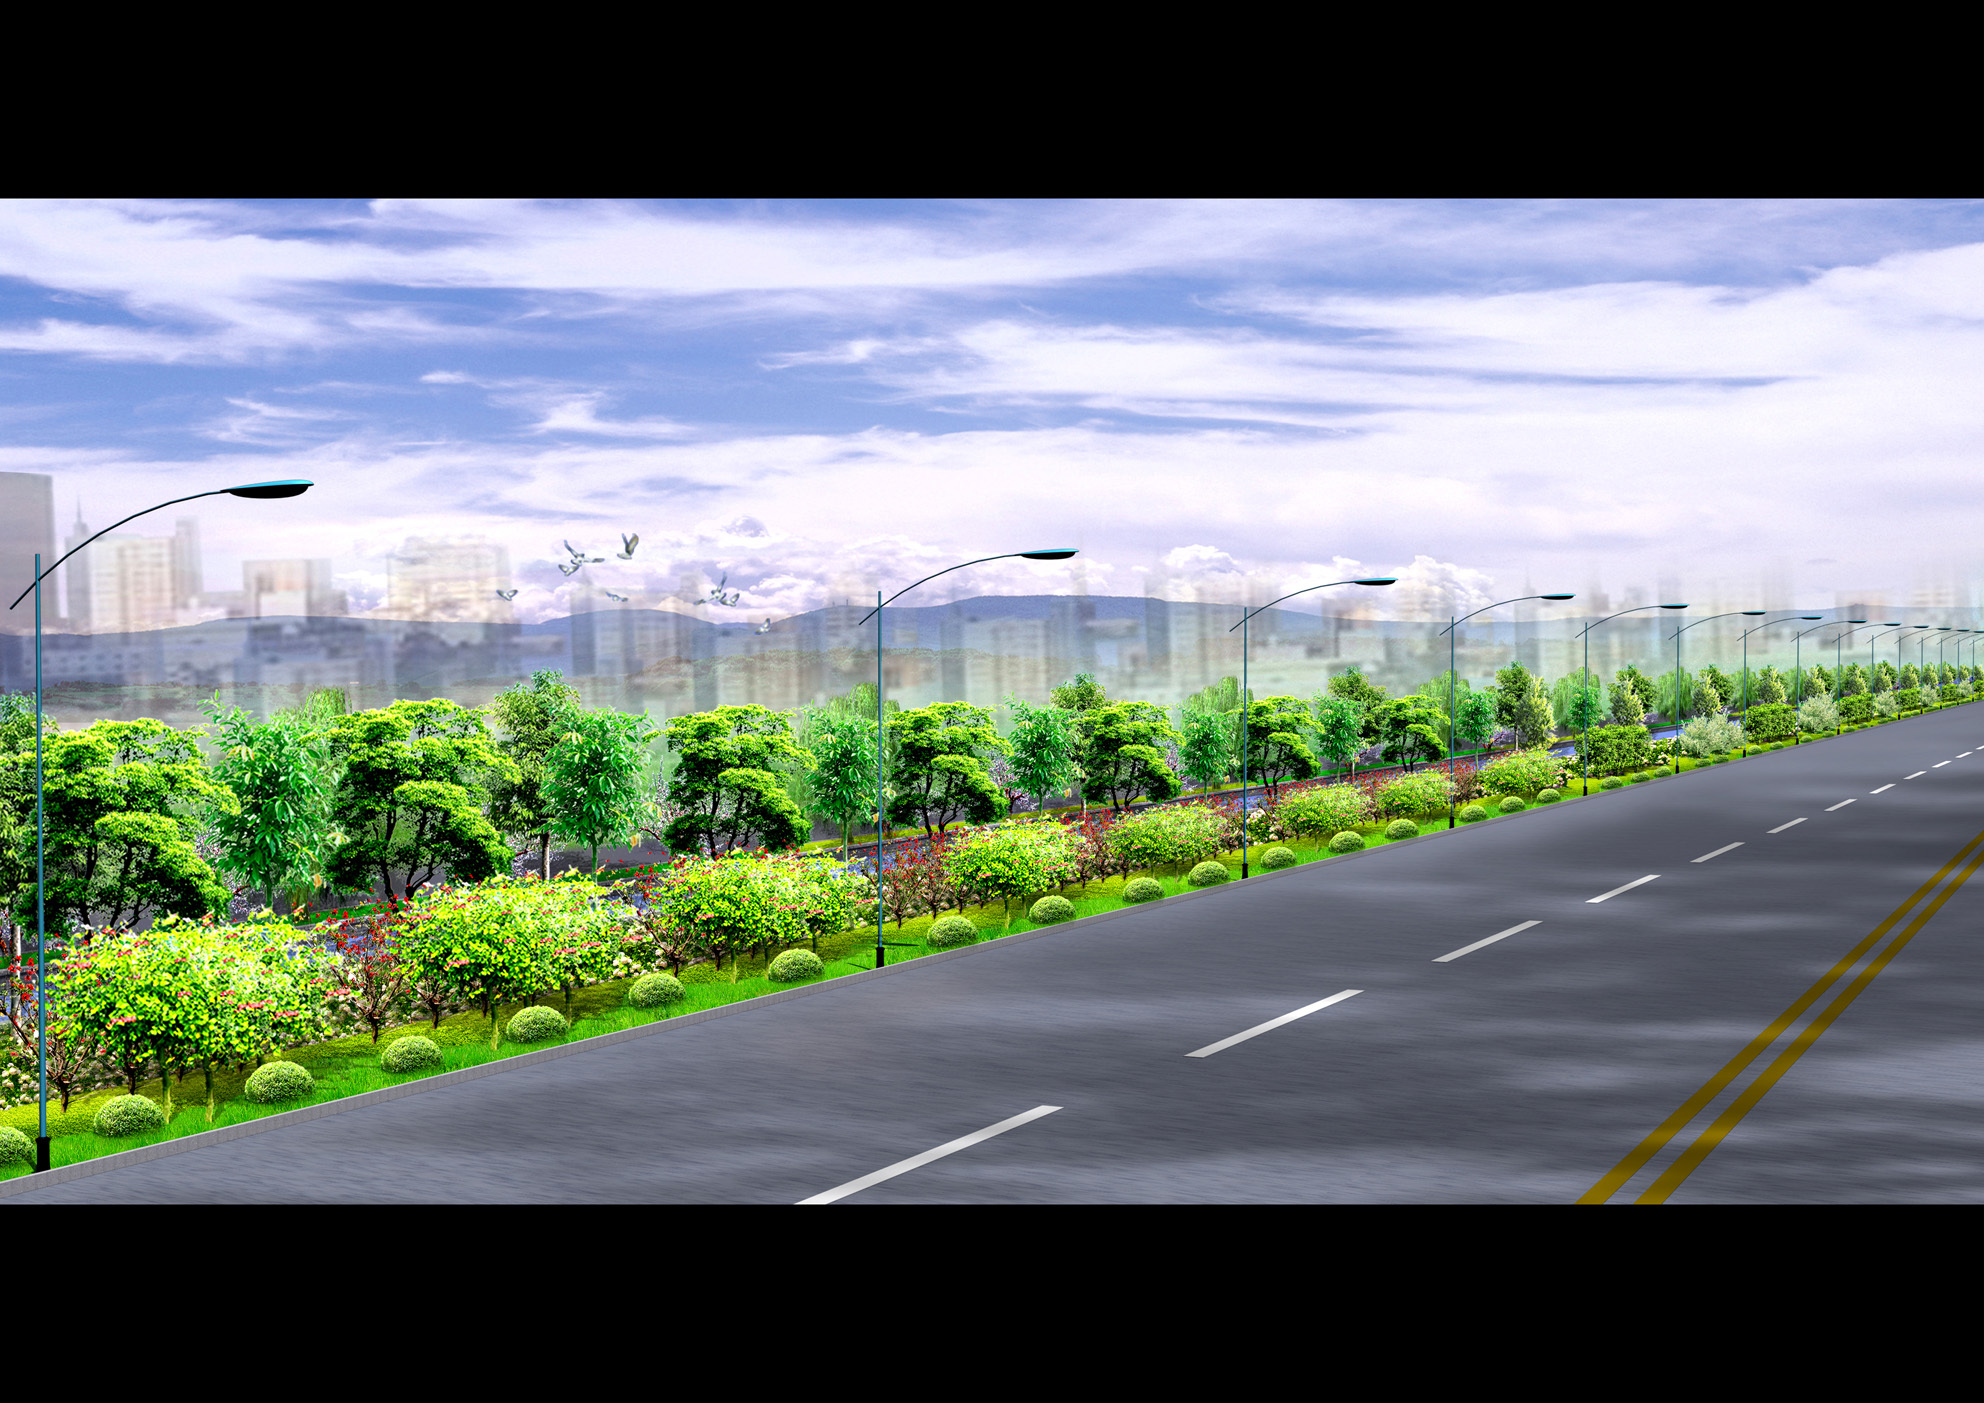 某地道路绿化景观的整体及透视效果图 某道路景观绿化主要道口接点